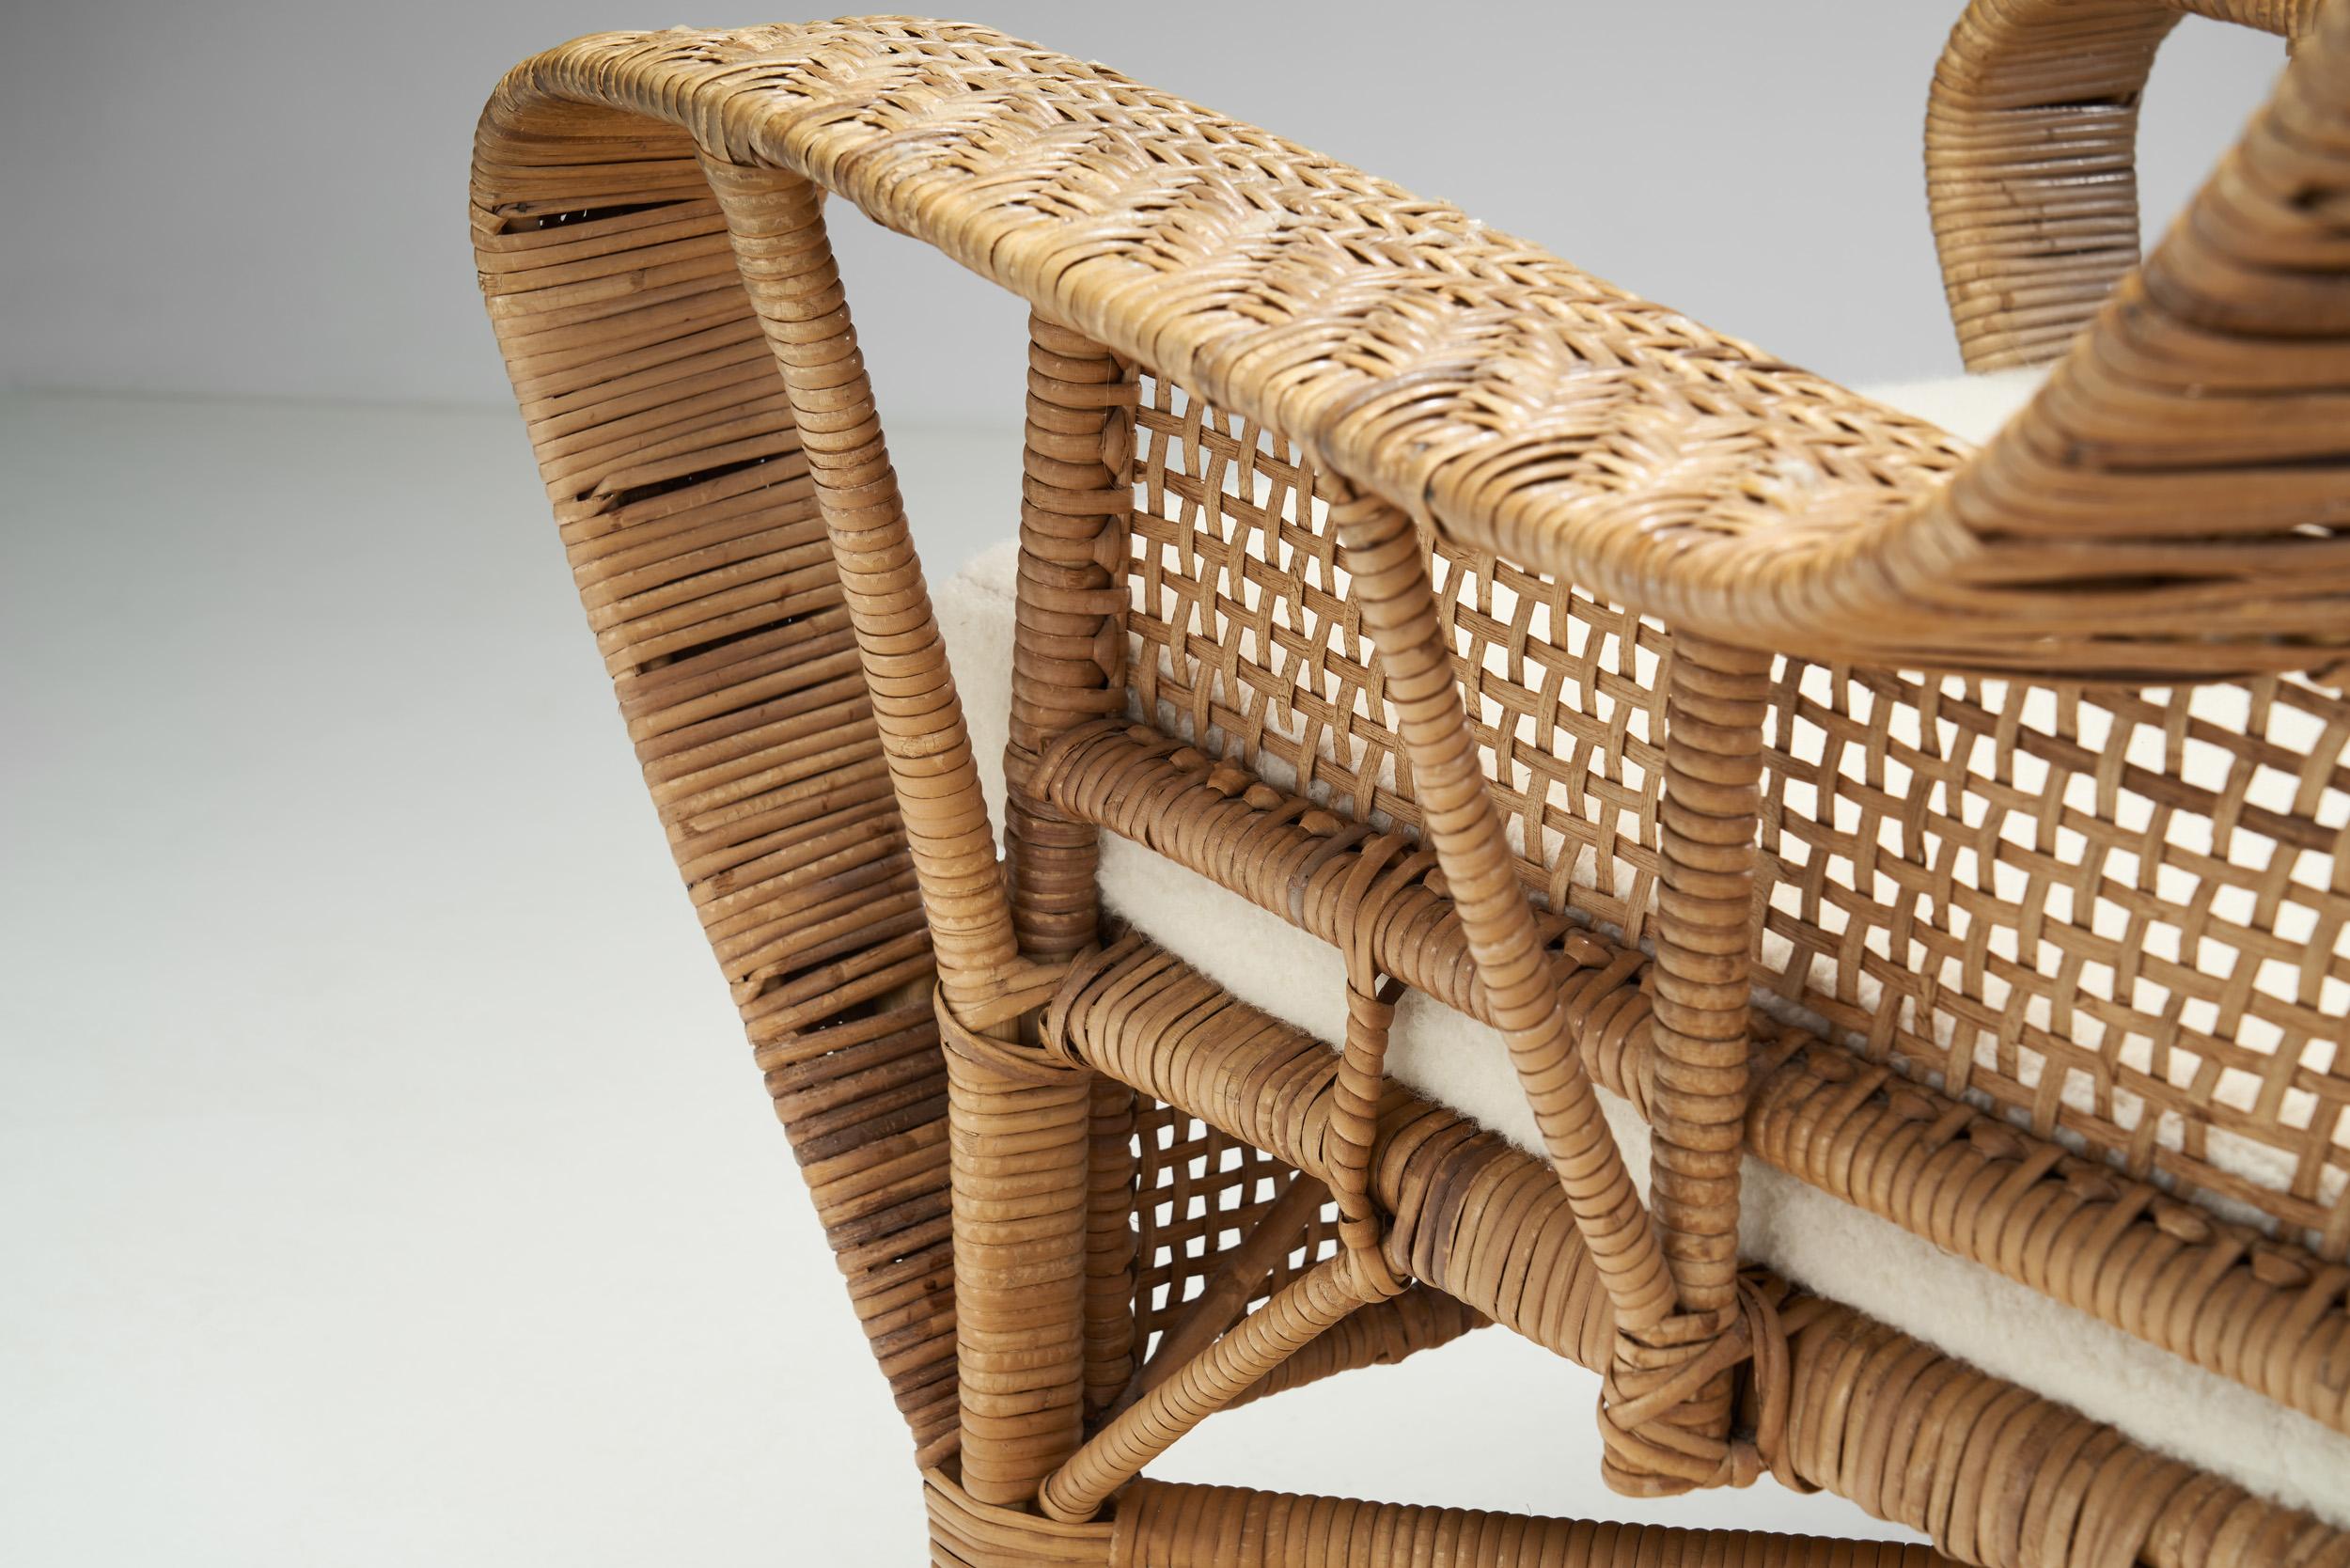 Kay Fisker “Canton” Woven Wicker Lounge Chair for Robert Wengler, Denmark 1950s For Sale 7